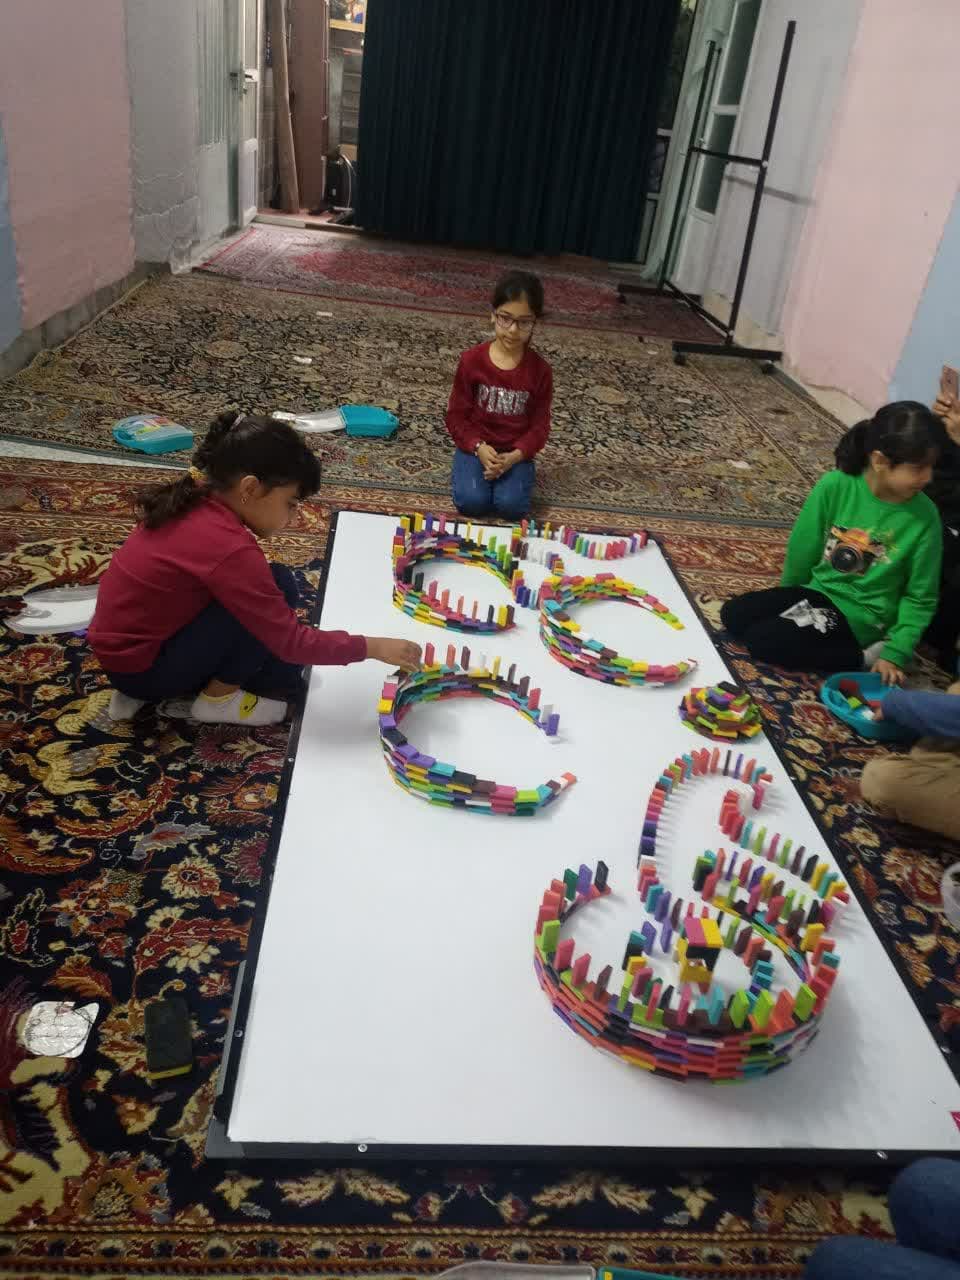 فضای مجازی، خلاقیت را از نوجوانان گرفت/ برگزاری مسابقه دومینو برای دانش آموزان در کرج